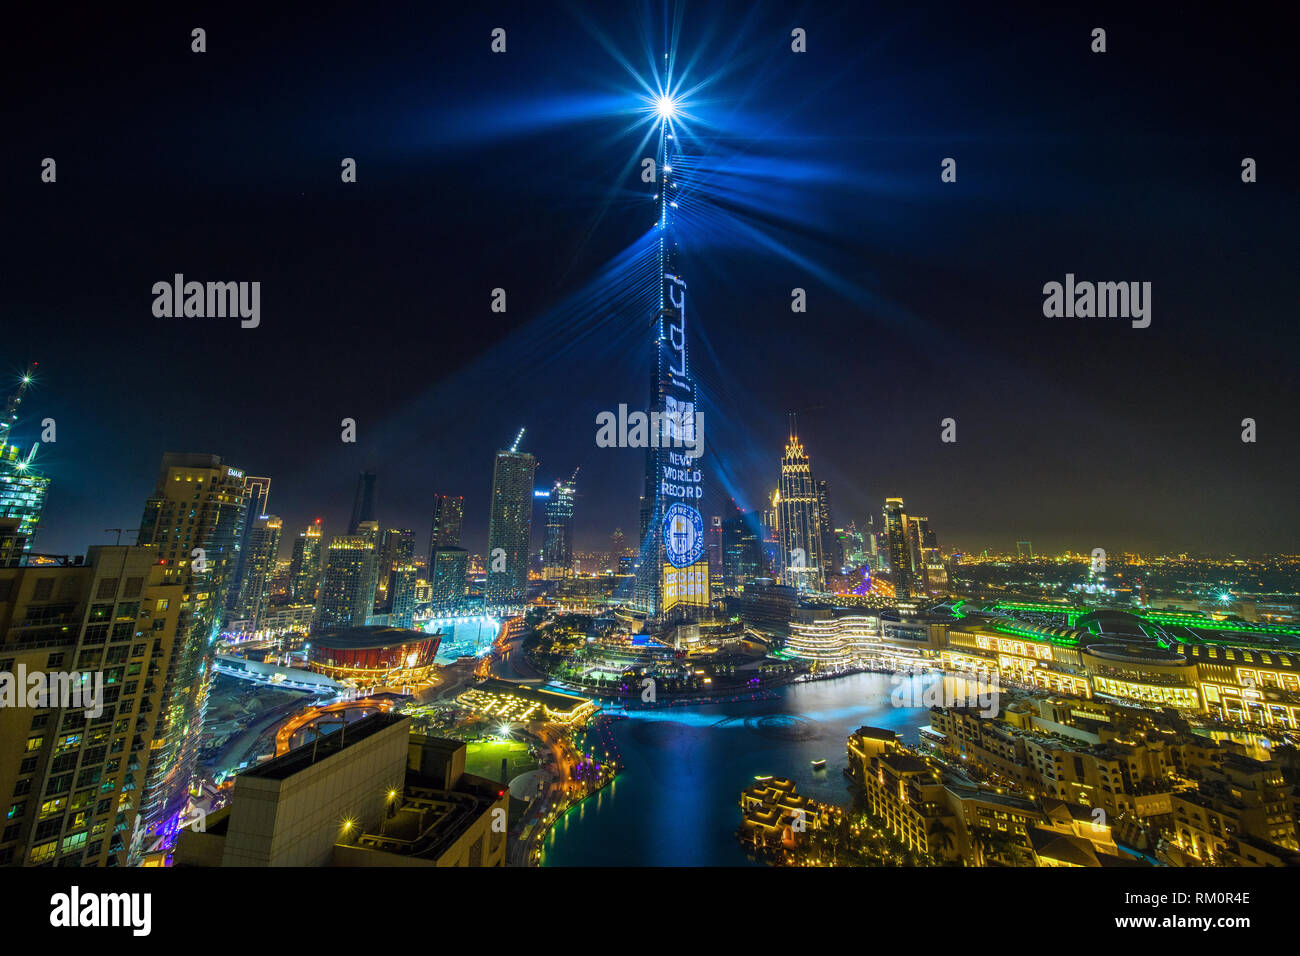 Les fêtes de fin d'année à Dubaï en tant que le plus haut bâtiment du monde cascades lumière à travers la ville. Banque D'Images